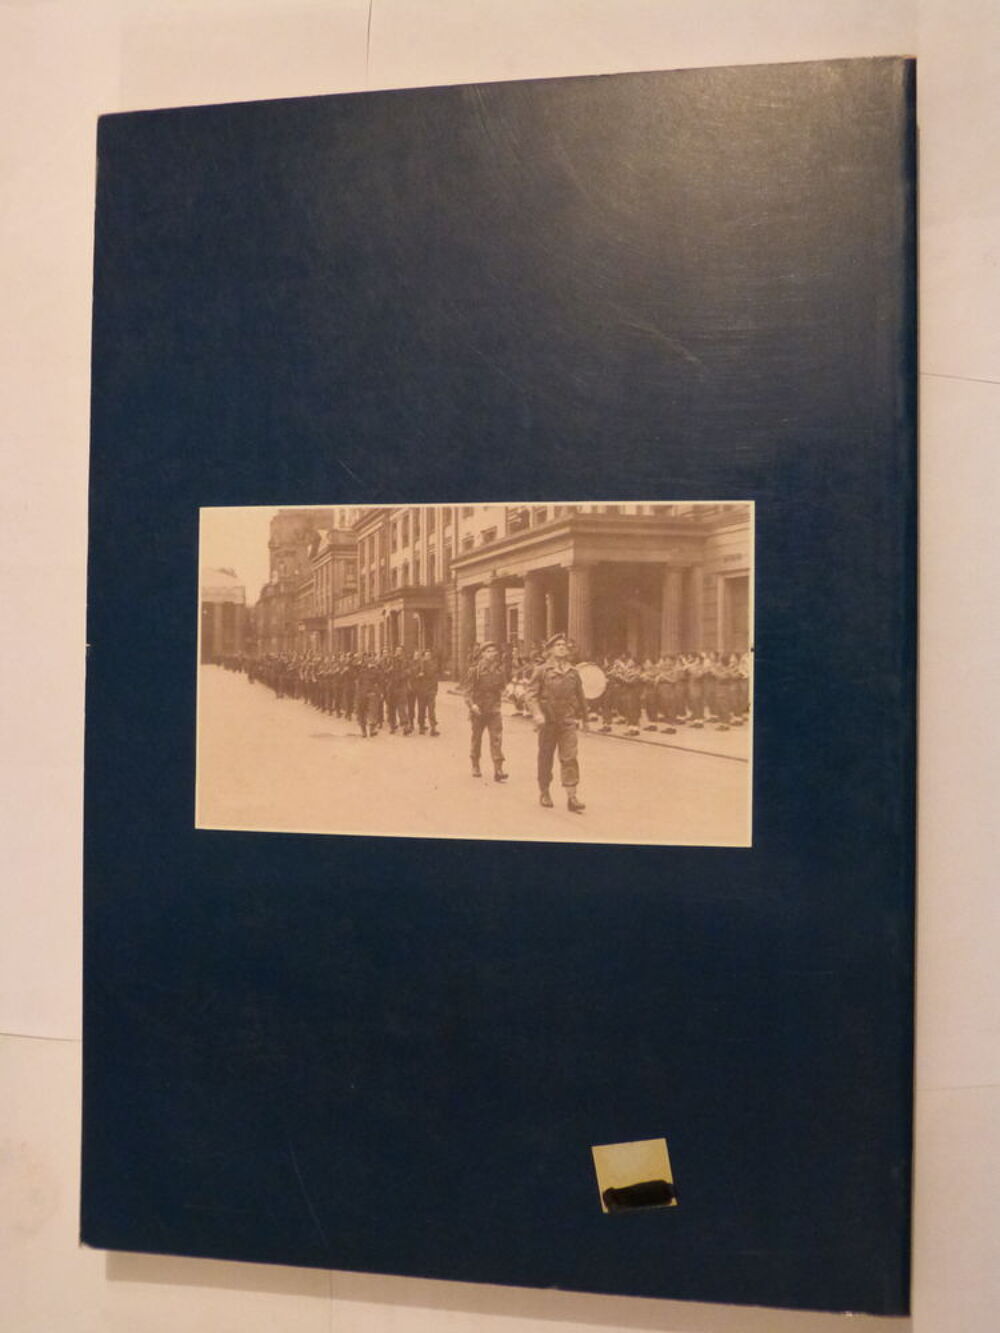 CHRONIQUE D' HIER t 3 LA VIE DU FINISTERE 1939 - 1945 Livres et BD